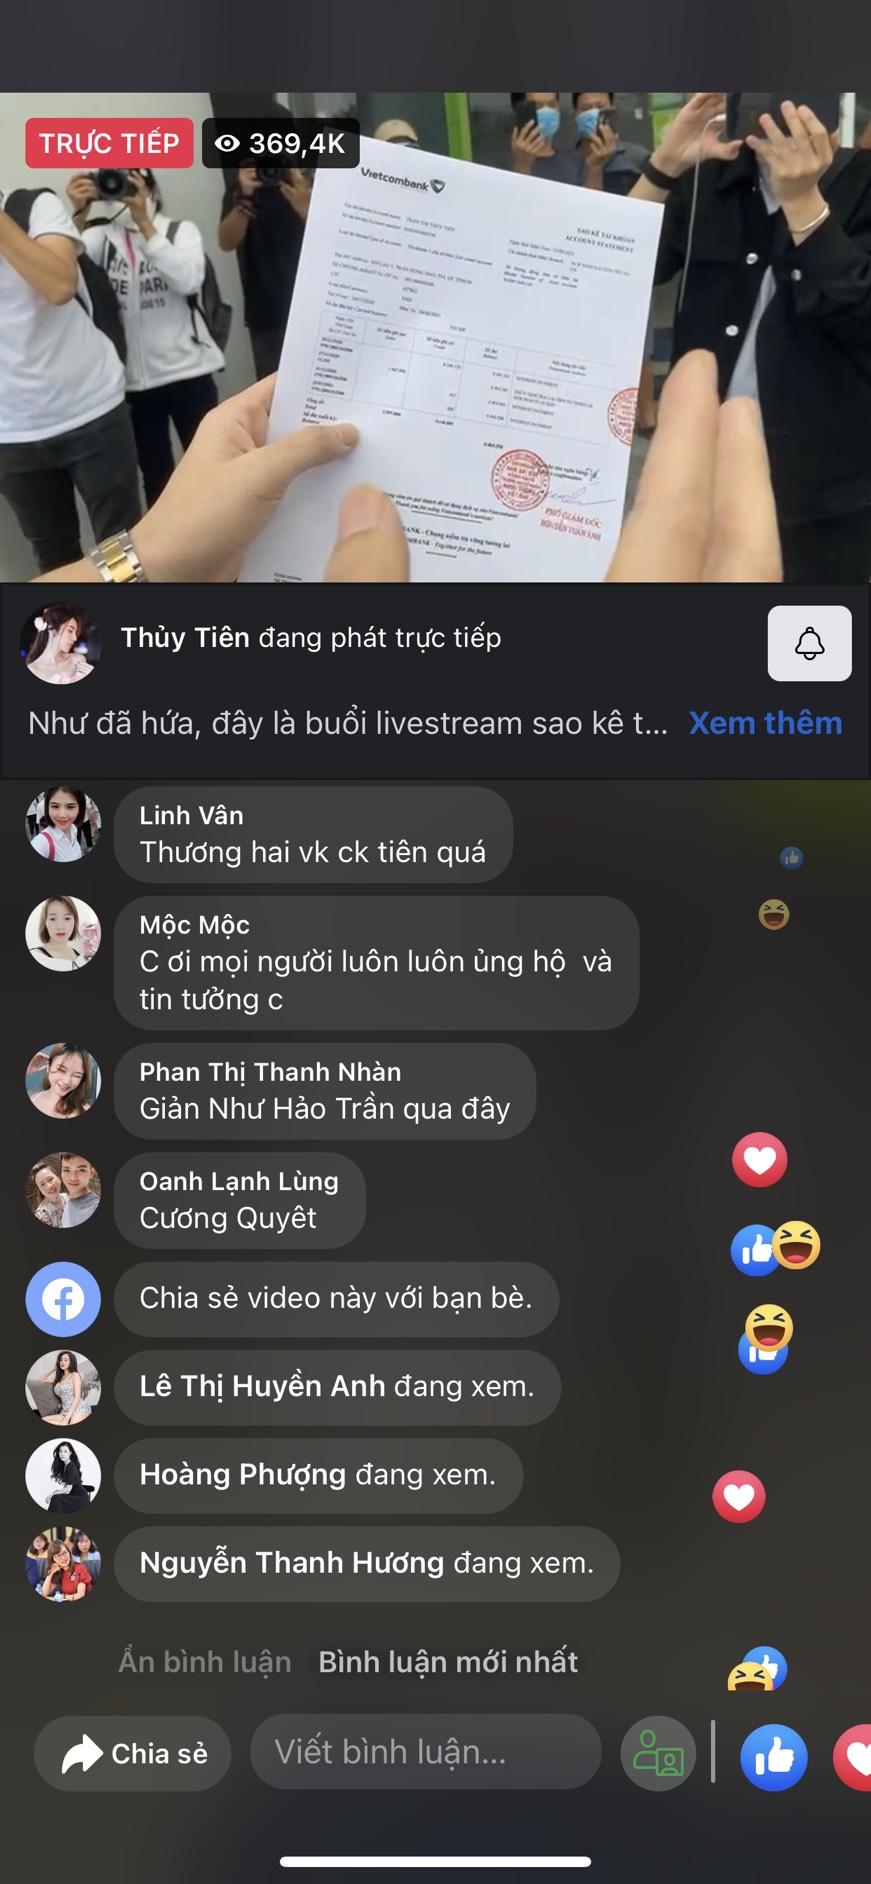 LIVE: Toàn cảnh Thủy Tiên livestream sao kê tại ngân hàng Vietcombank - Ảnh 2